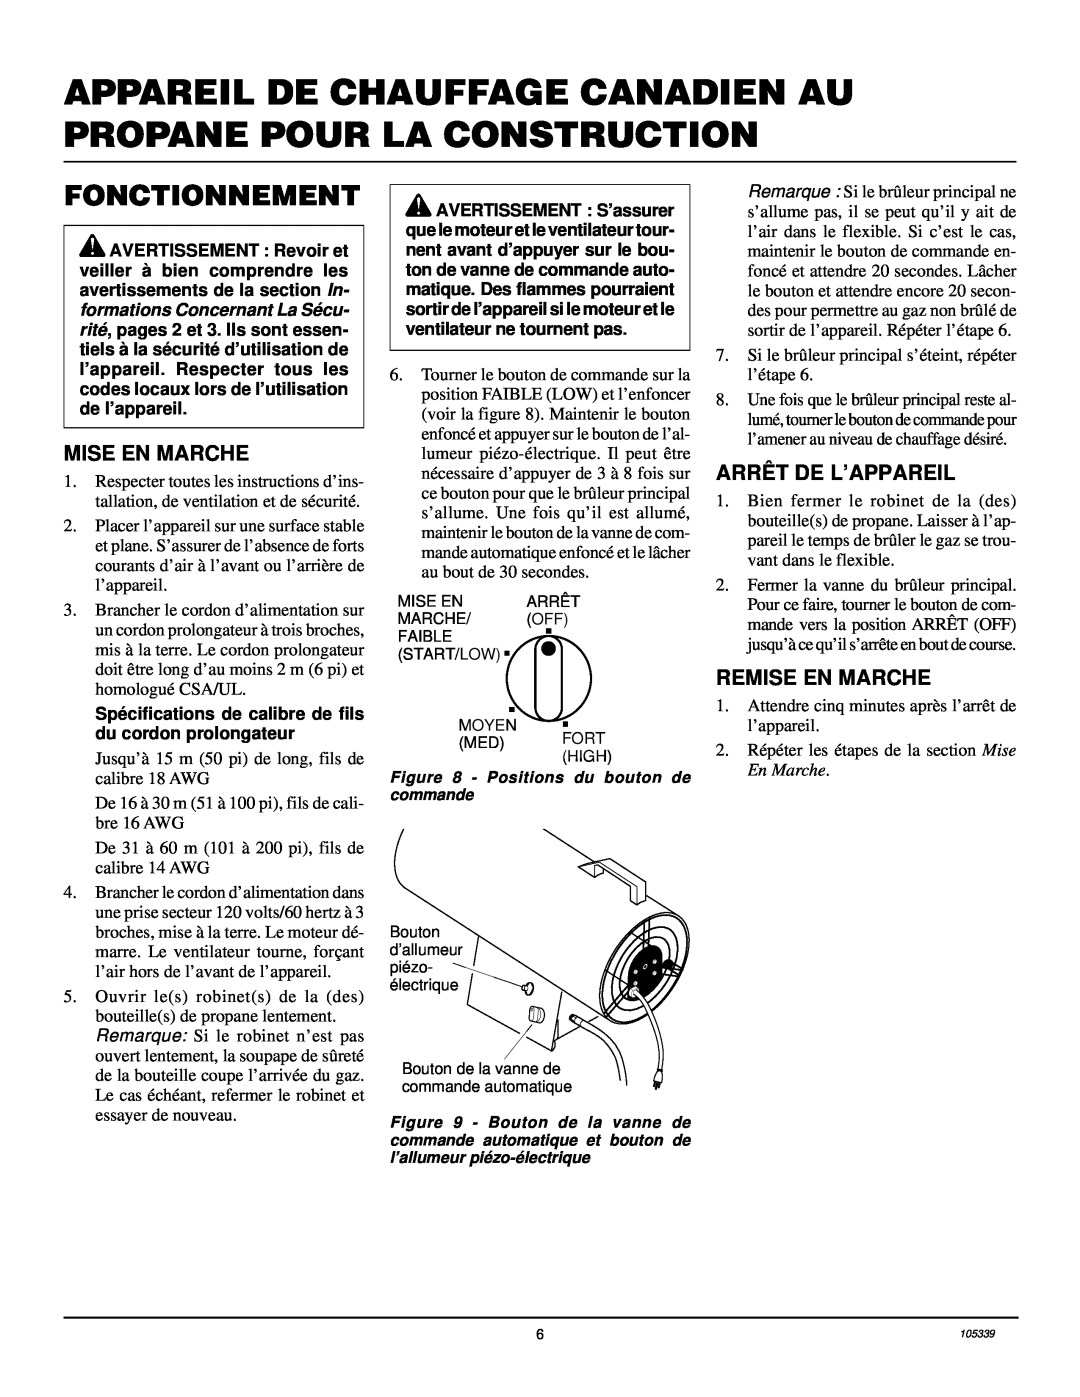 Desa RCLP50VA owner manual Fonctionnement, Mise En Marche, Arrêt De L’Appareil, Remise En Marche 